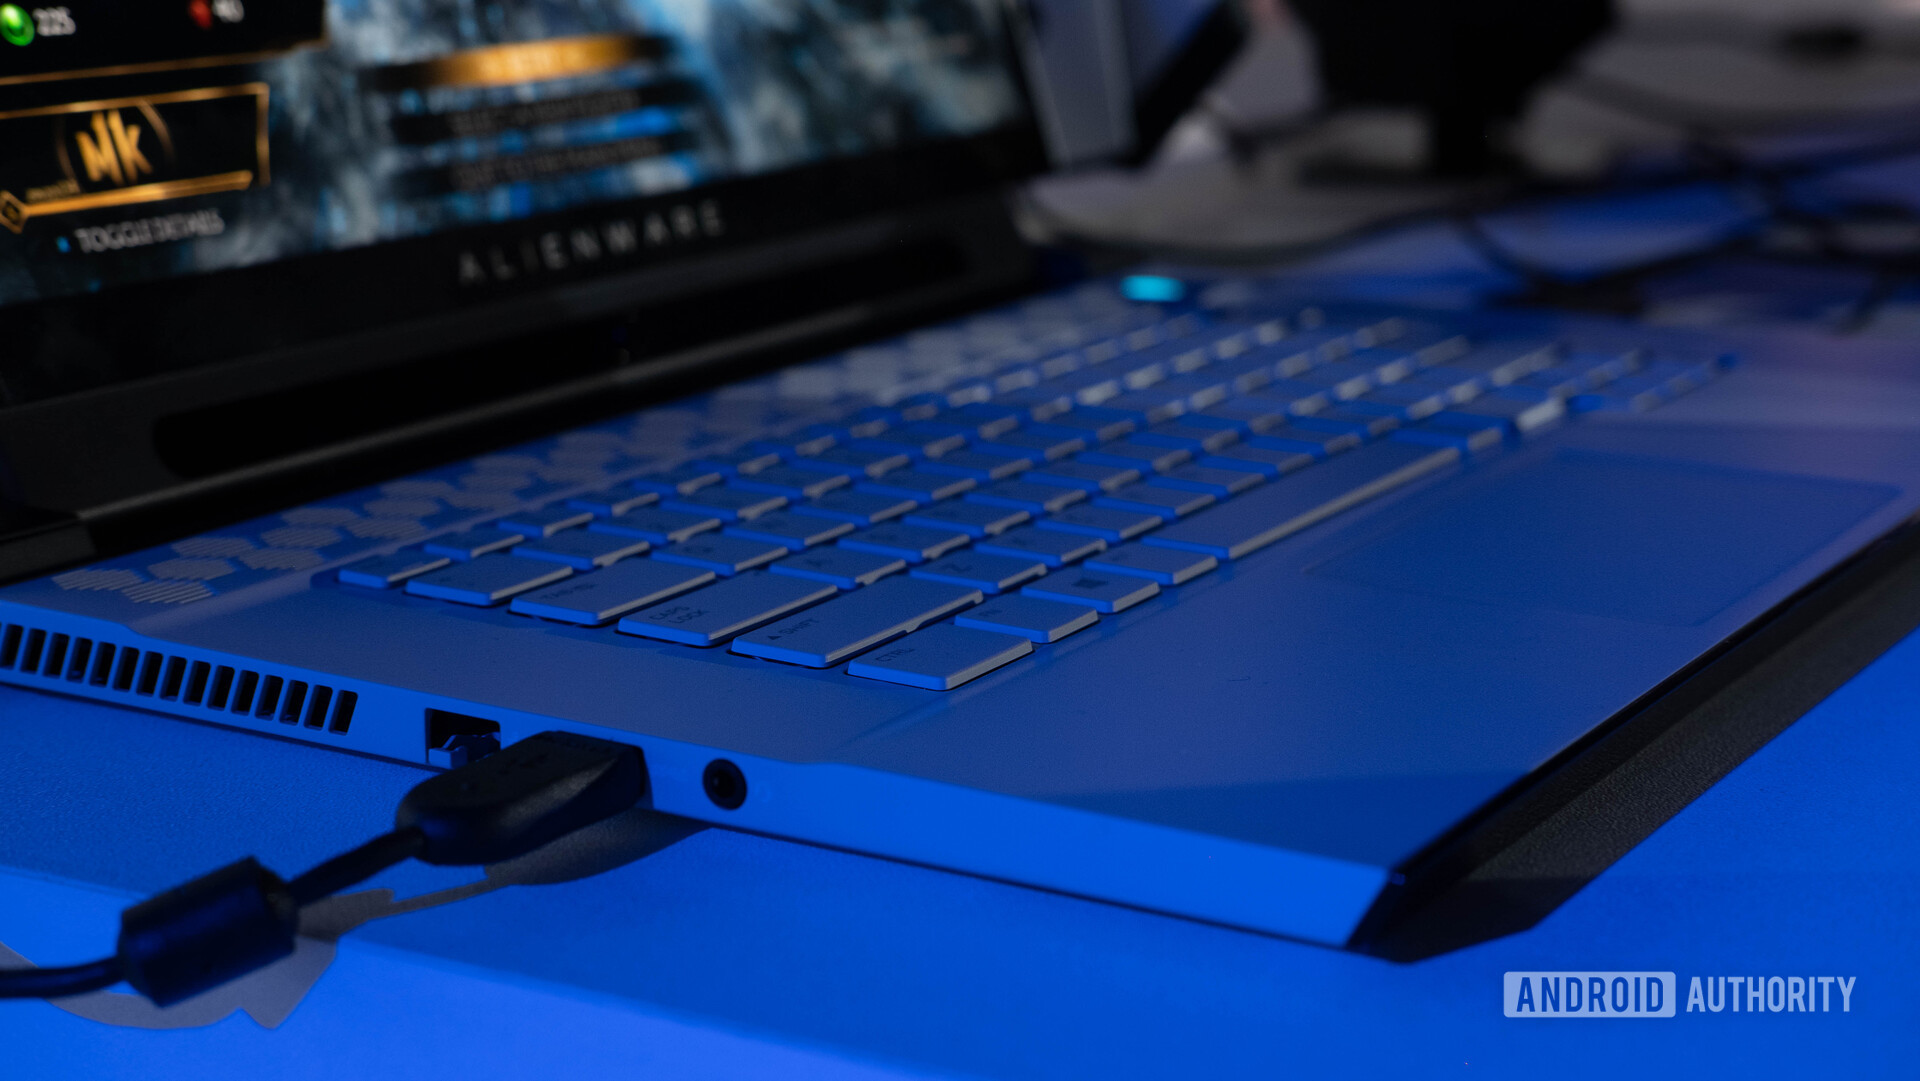 Dell Alienware m15 2019 - keyboard